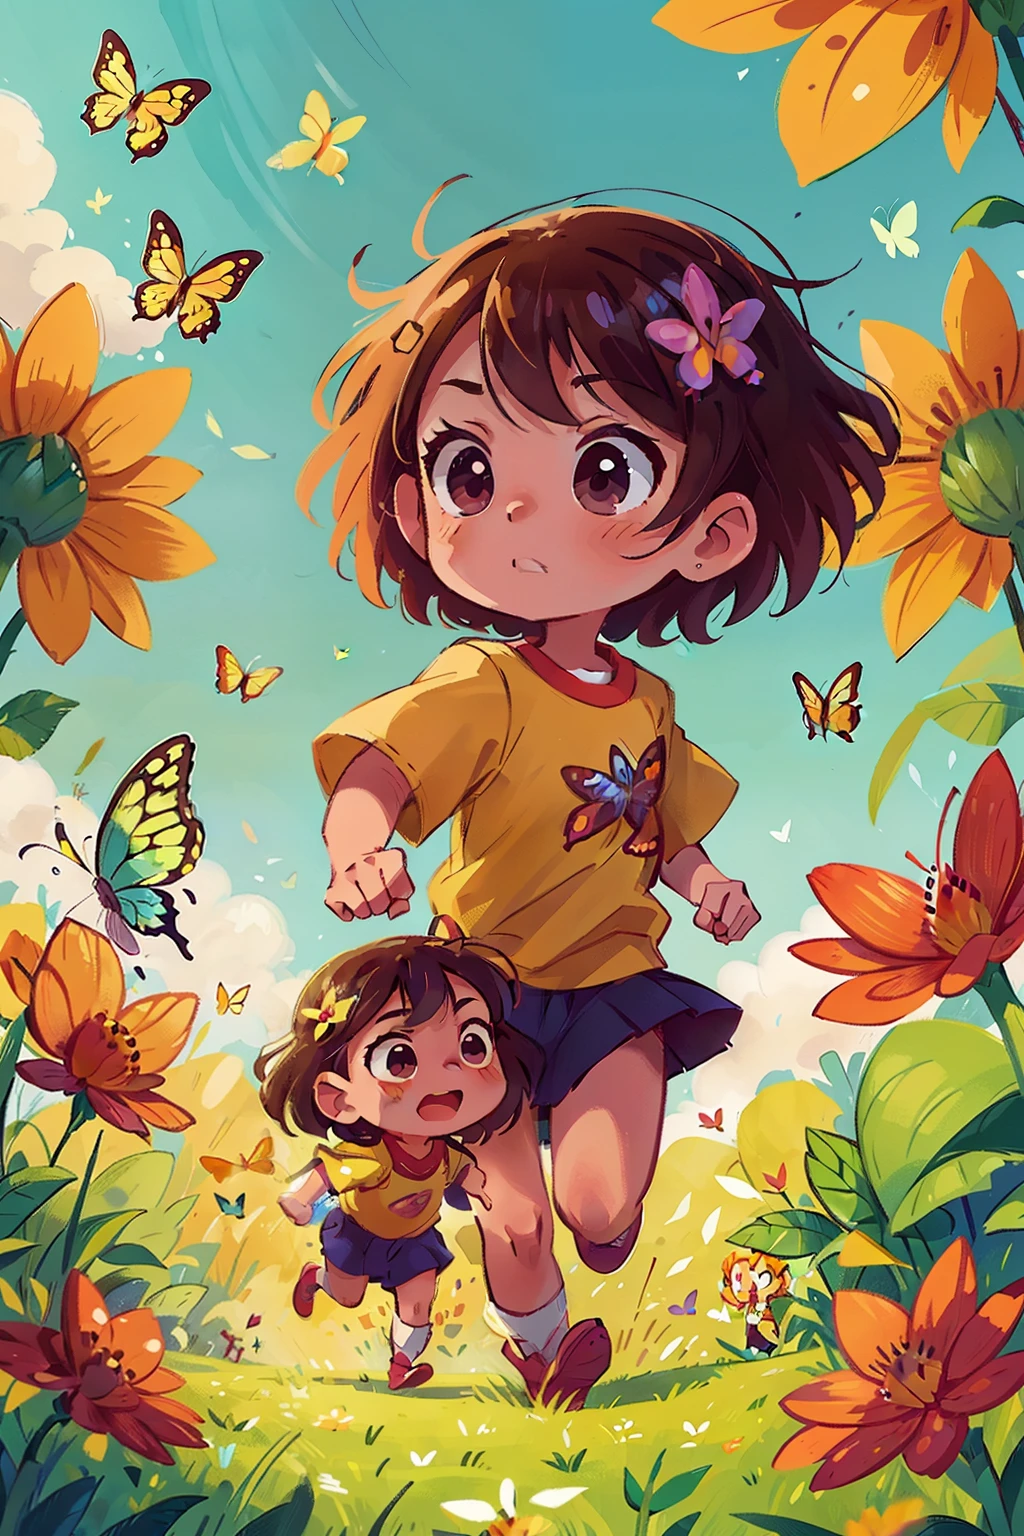 Erzeugt ein Bild von zwei sehr jungen Mädchen, die glücklich in einem Blumenfeld laufen, umgeben von Schmetterlingen in verschiedenen Farbtönen